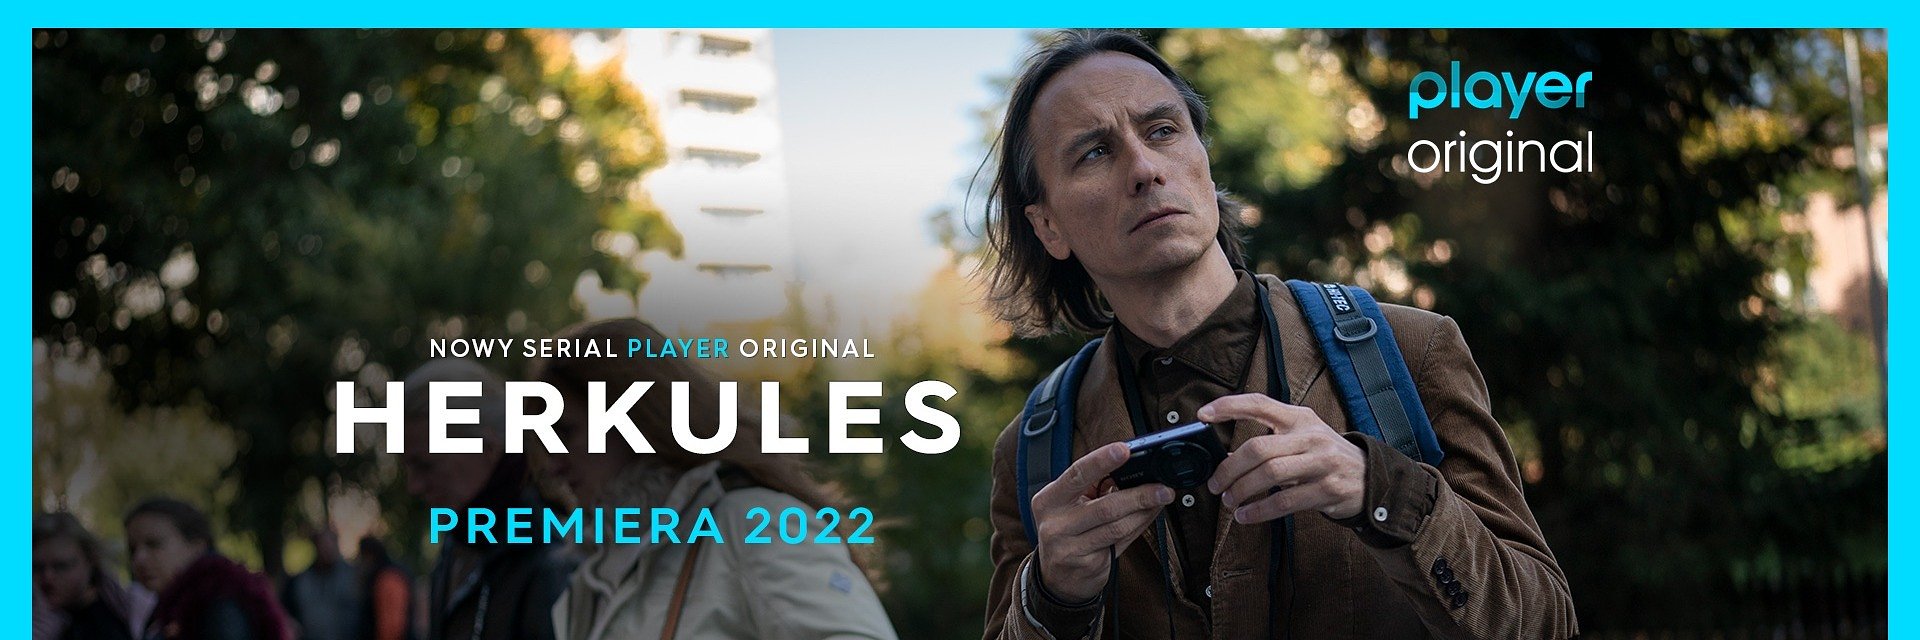 “Herkules” – nowy serial Player Original zadebiutuje w 2022 roku. O czym opowie? Będzie kolejny hit?